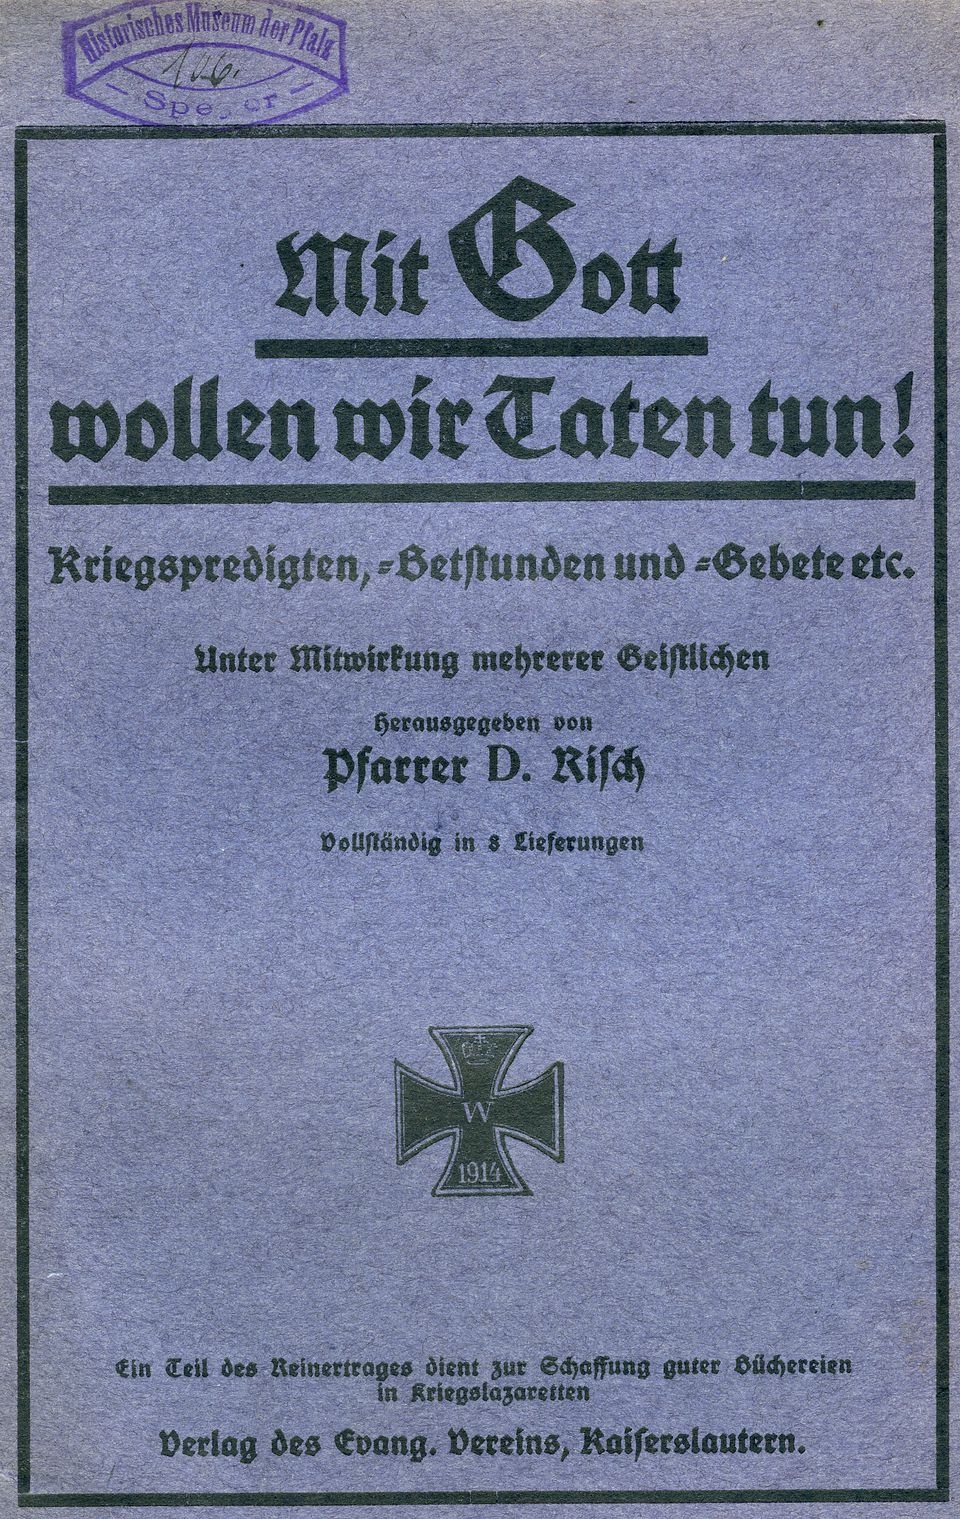 Sammelschrift Kriegspredigten, -betstunden und -gebete etc. (Historisches Museum der Pfalz, Speyer CC BY)